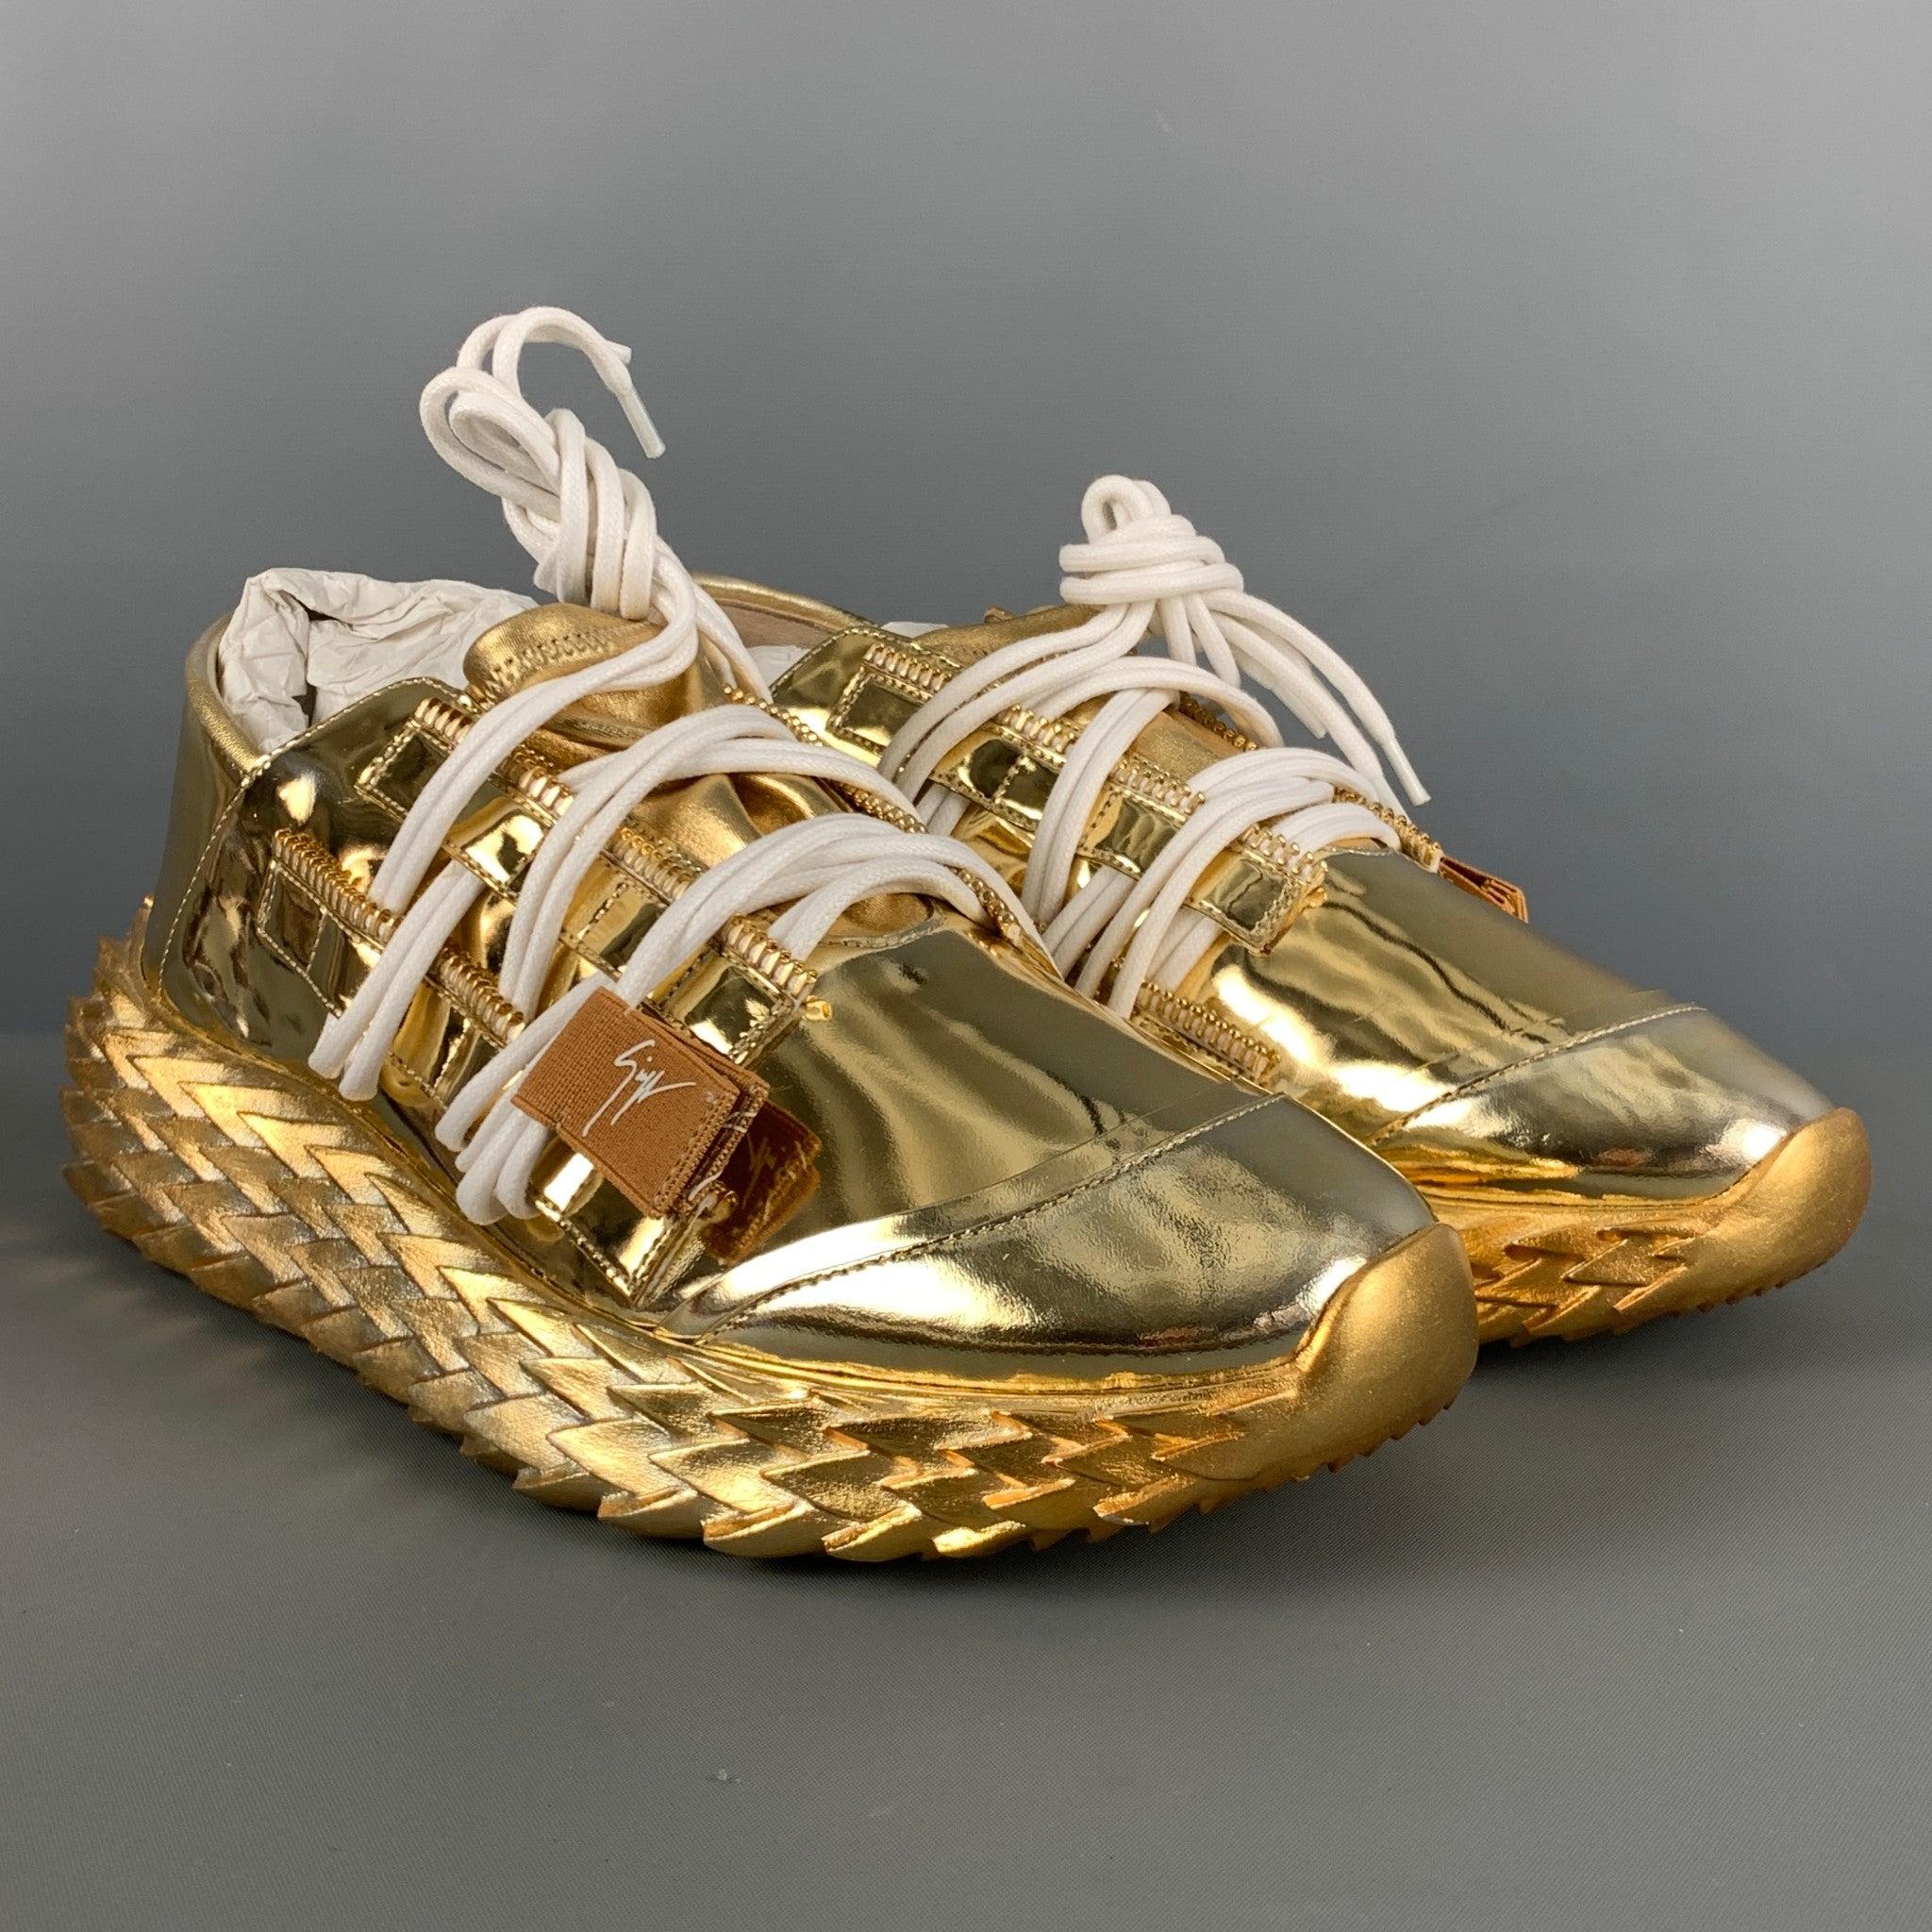 GIUSEPPE ZANOTTI URCHIN Sneakers aus goldfarbenem Lackleder mit goldener Gummisohle, Low-Top-Stil und weißem Schnürverschluss. Hergestellt in Italien. Kommt mit box.Very Good Pre-Owned Condition. 

Markiert:   9Außensohle: 11,5 Zoll  x 4,5 Zoll 

 